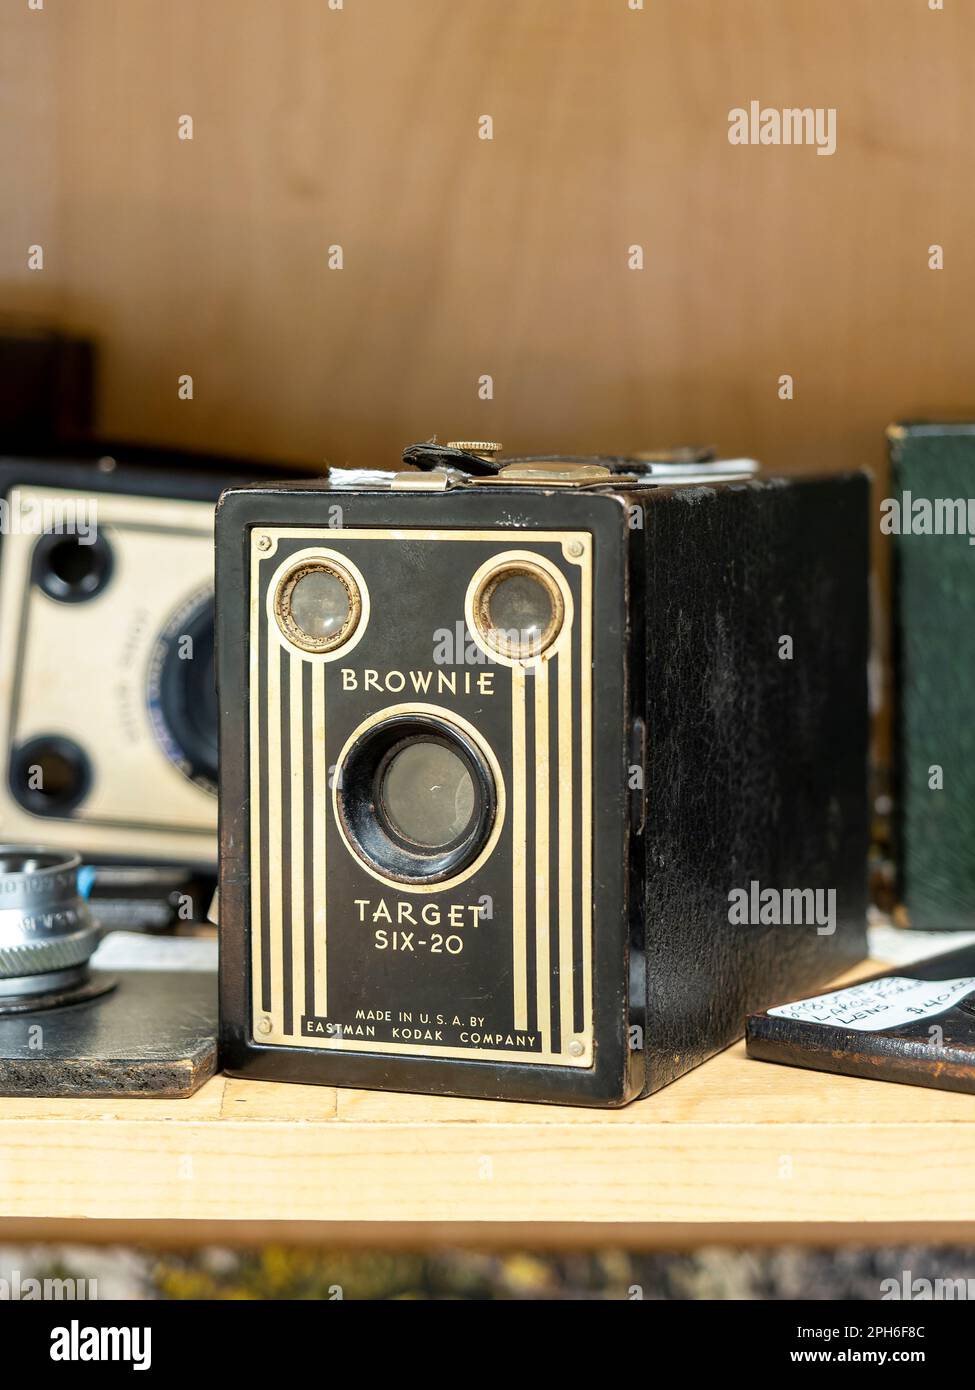 Brownie Target Six - 20 Oldtimer- oder Antiquitätenkamera von Eastman Kodak, beliebt bei Anfängerfotografen in den 1940er bis 1950er Jahren in den USA. Stockfoto